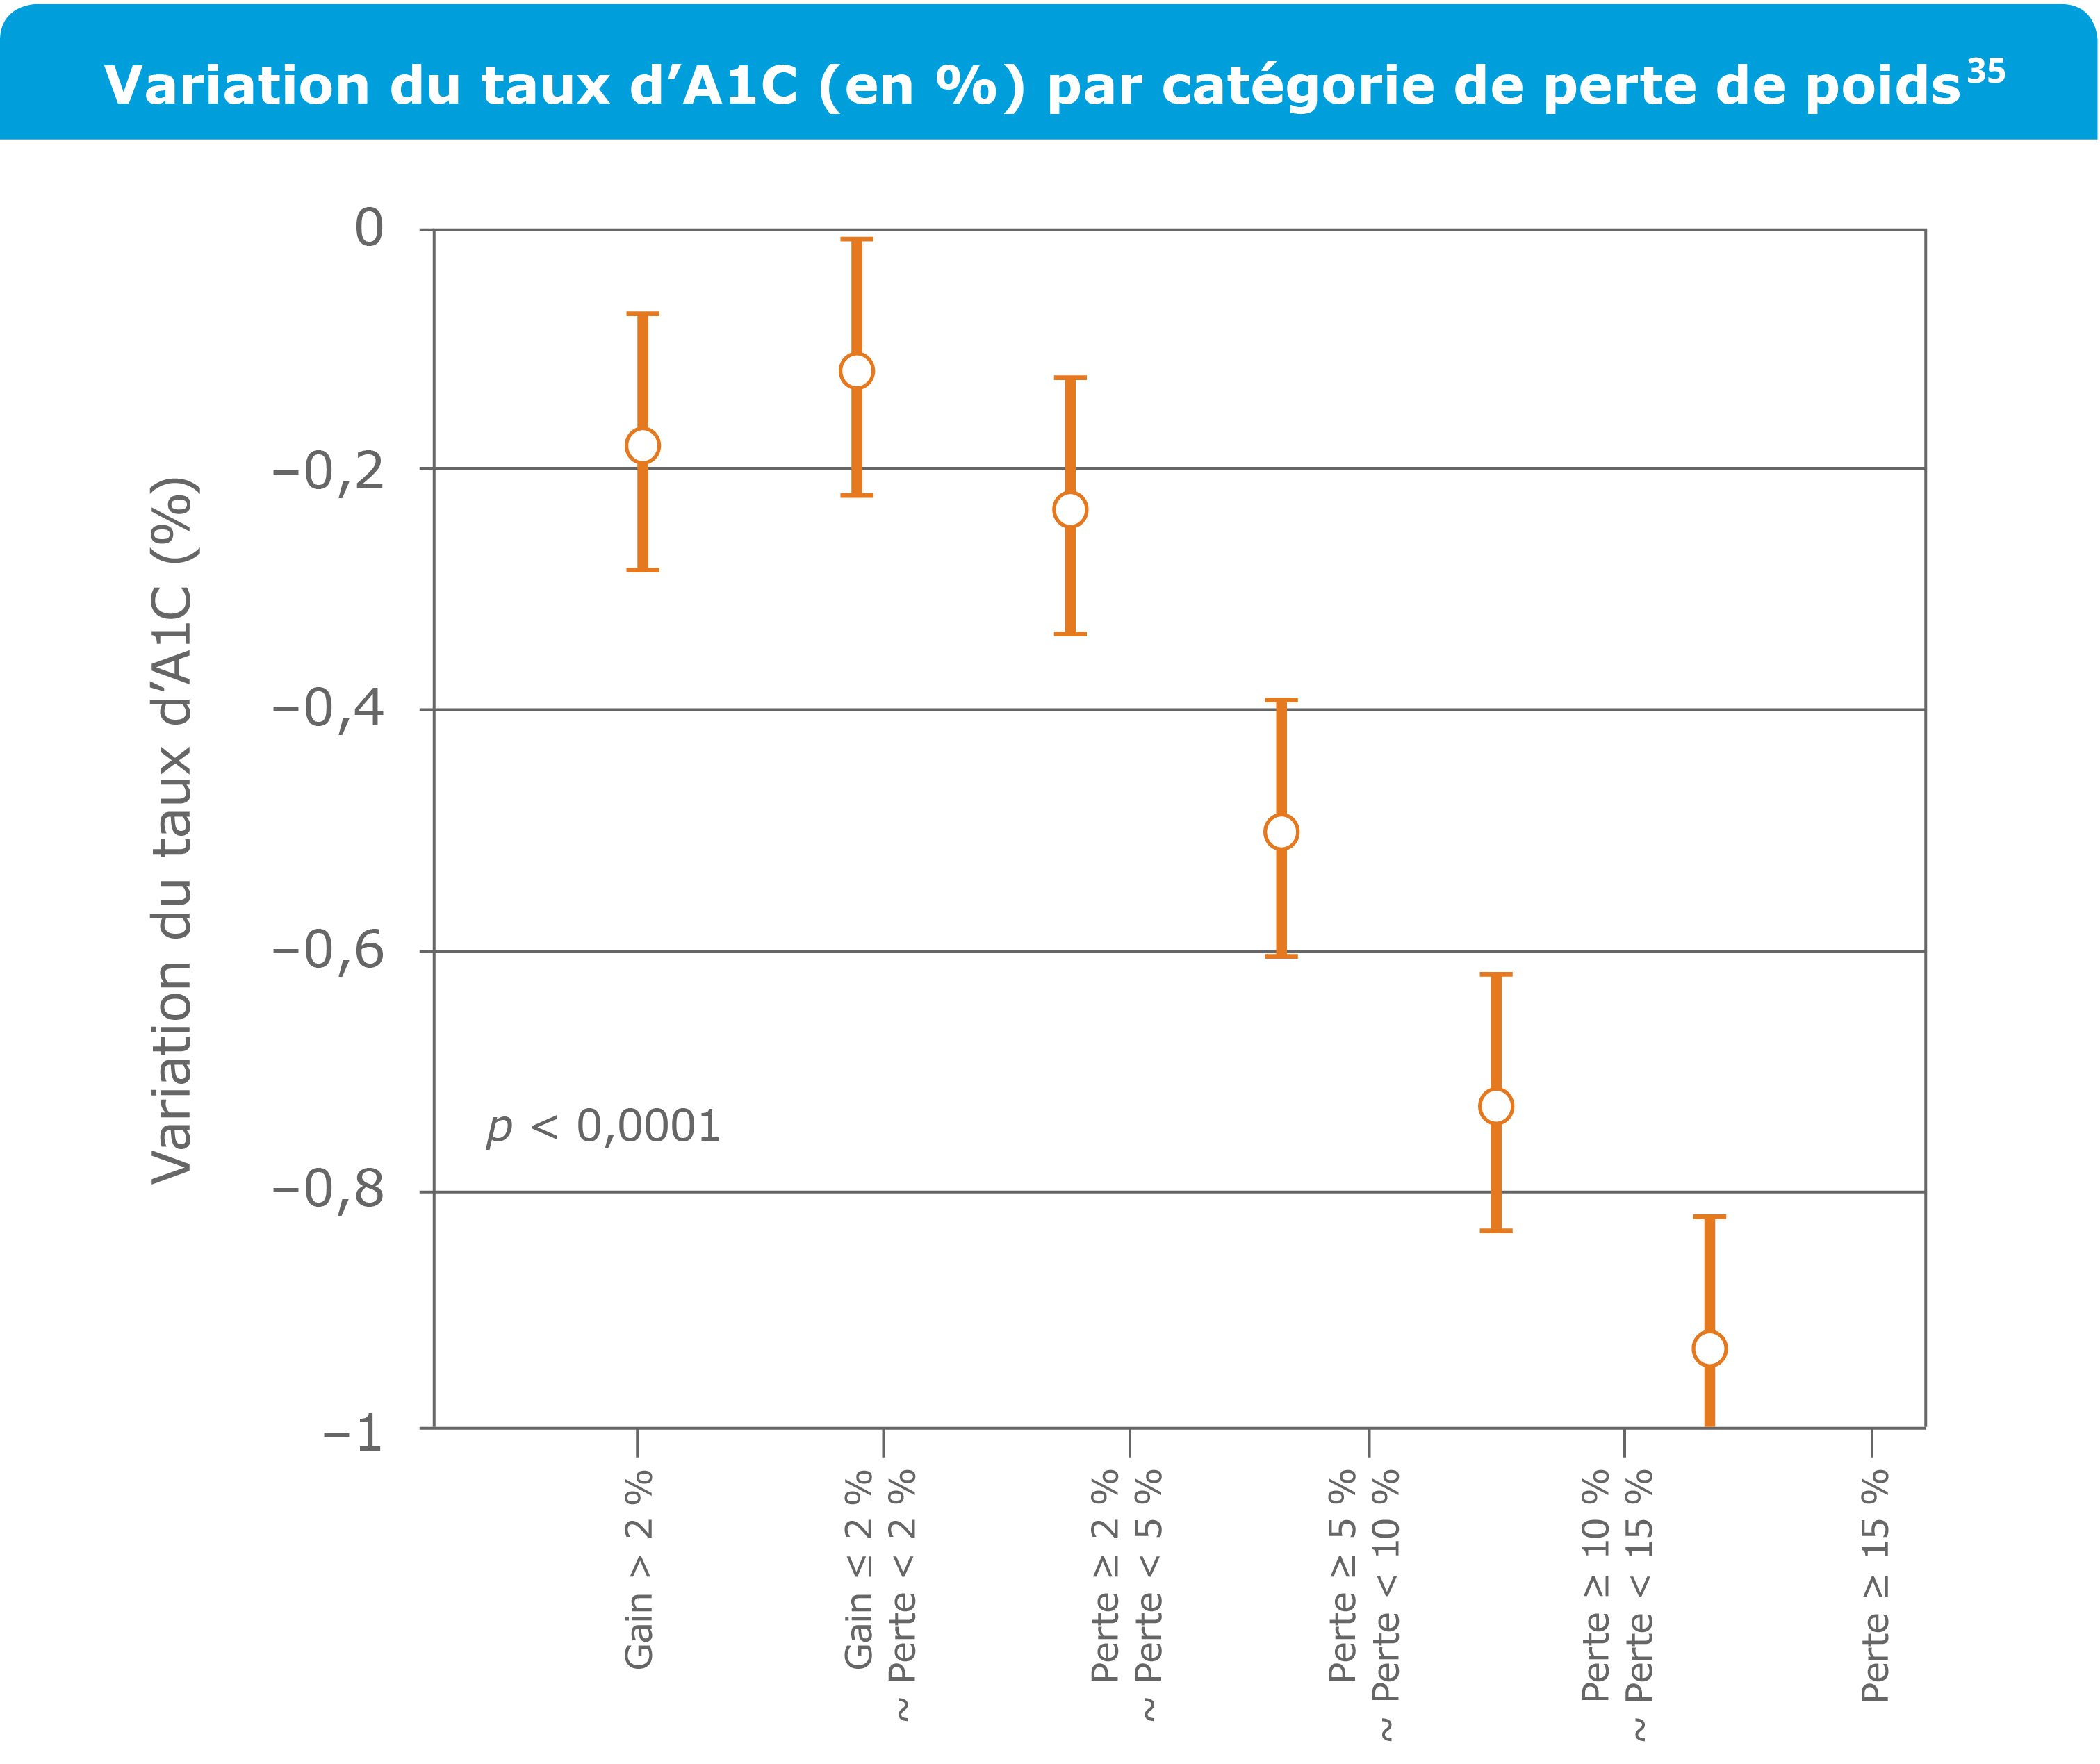 Variation du taux d’A1C (en %) par catégorie de perte de poids